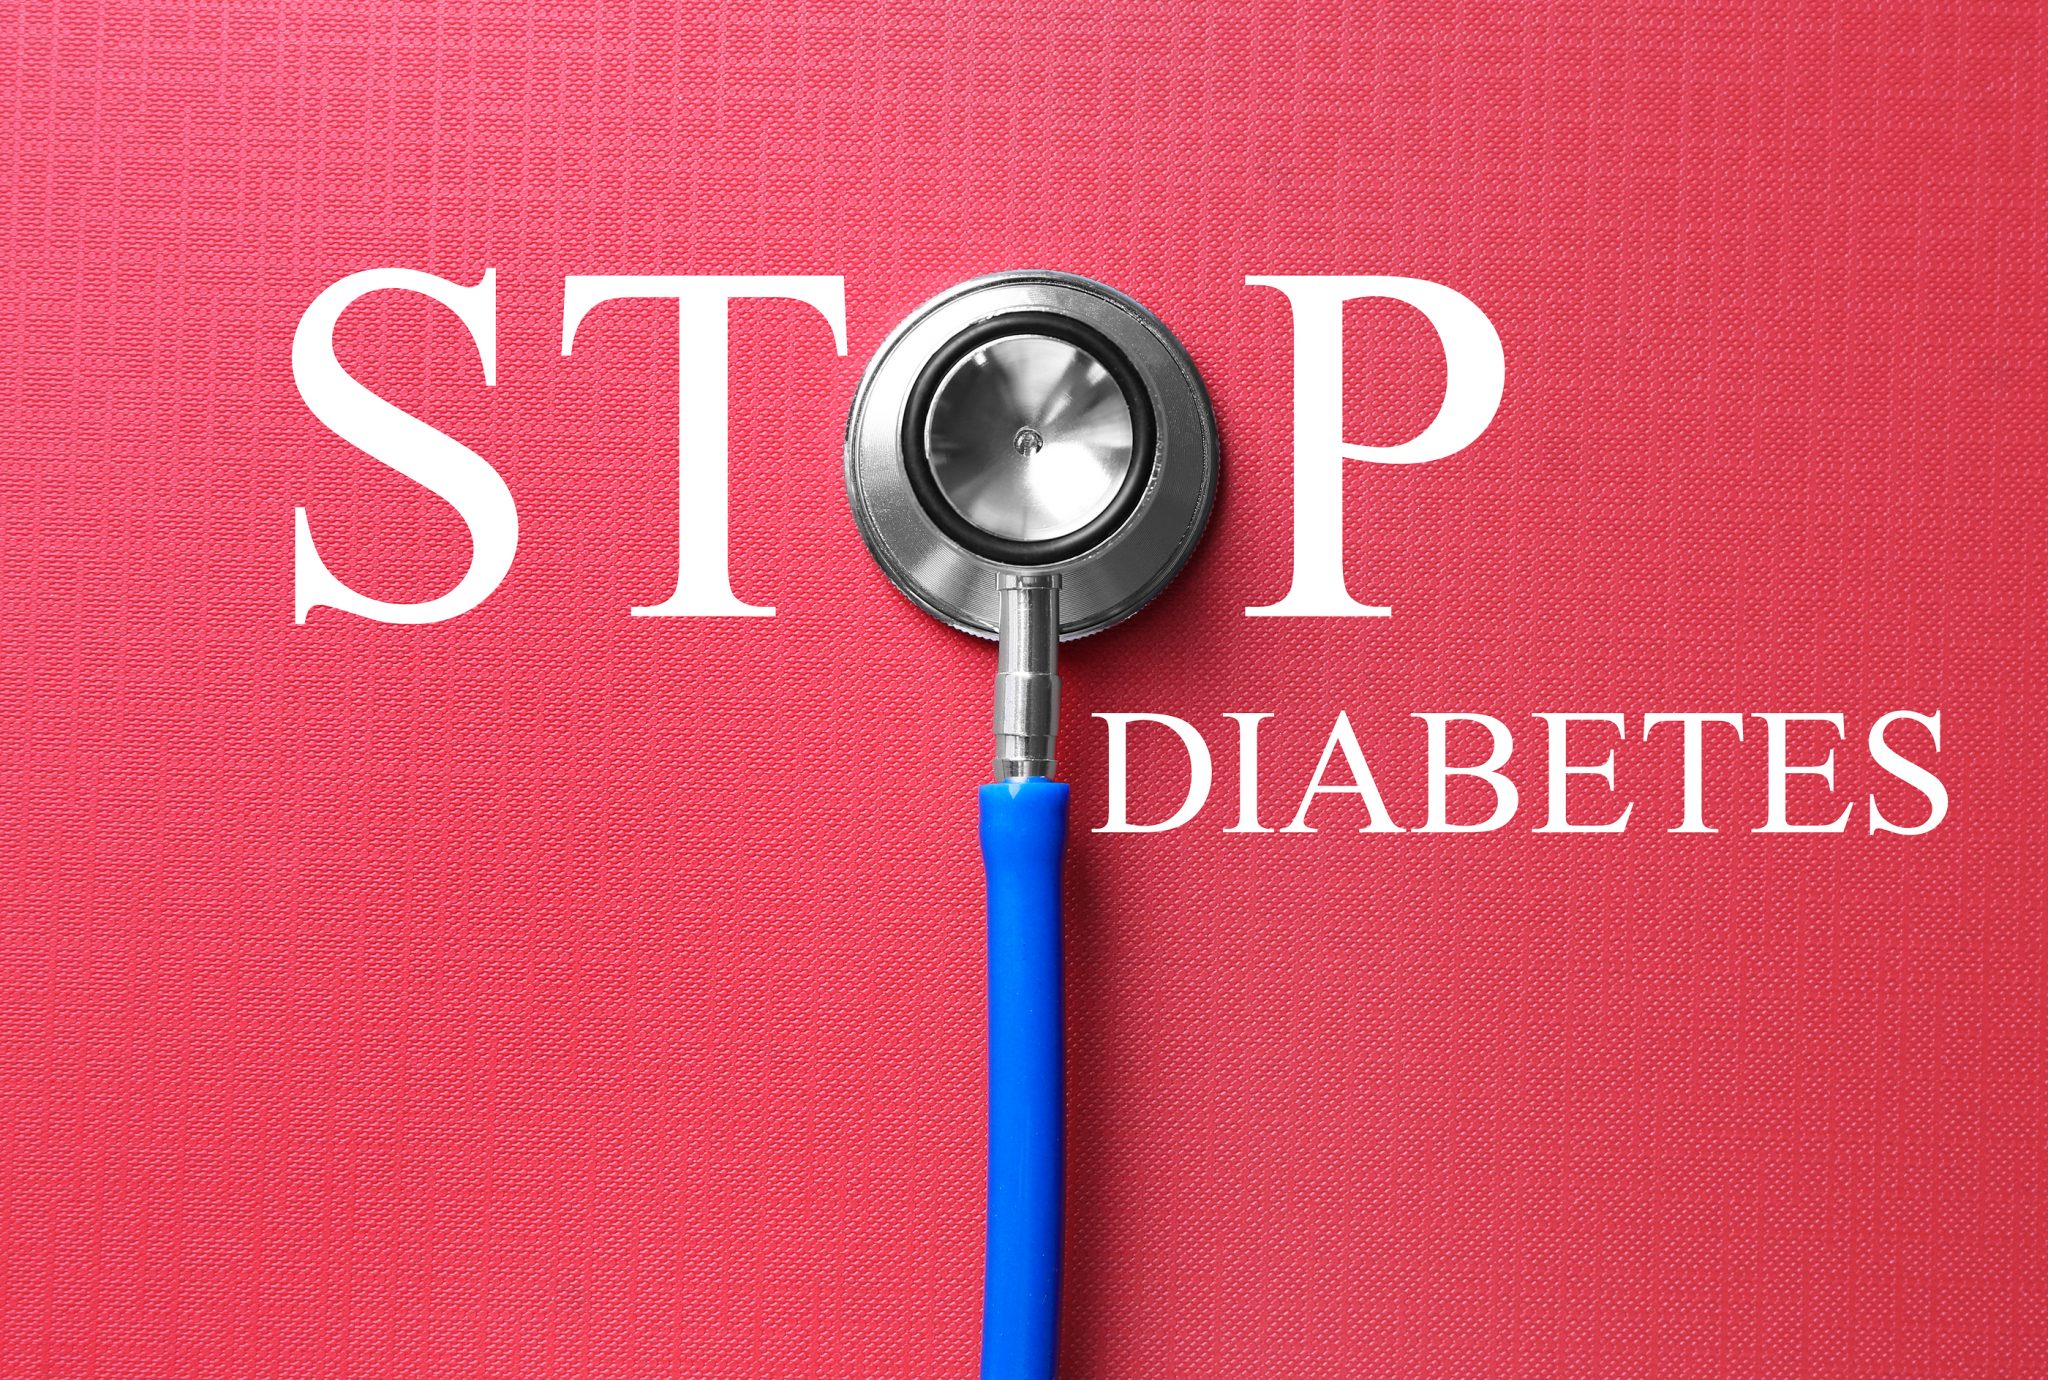 Keer diabetes om met je leefstijl als medicijn